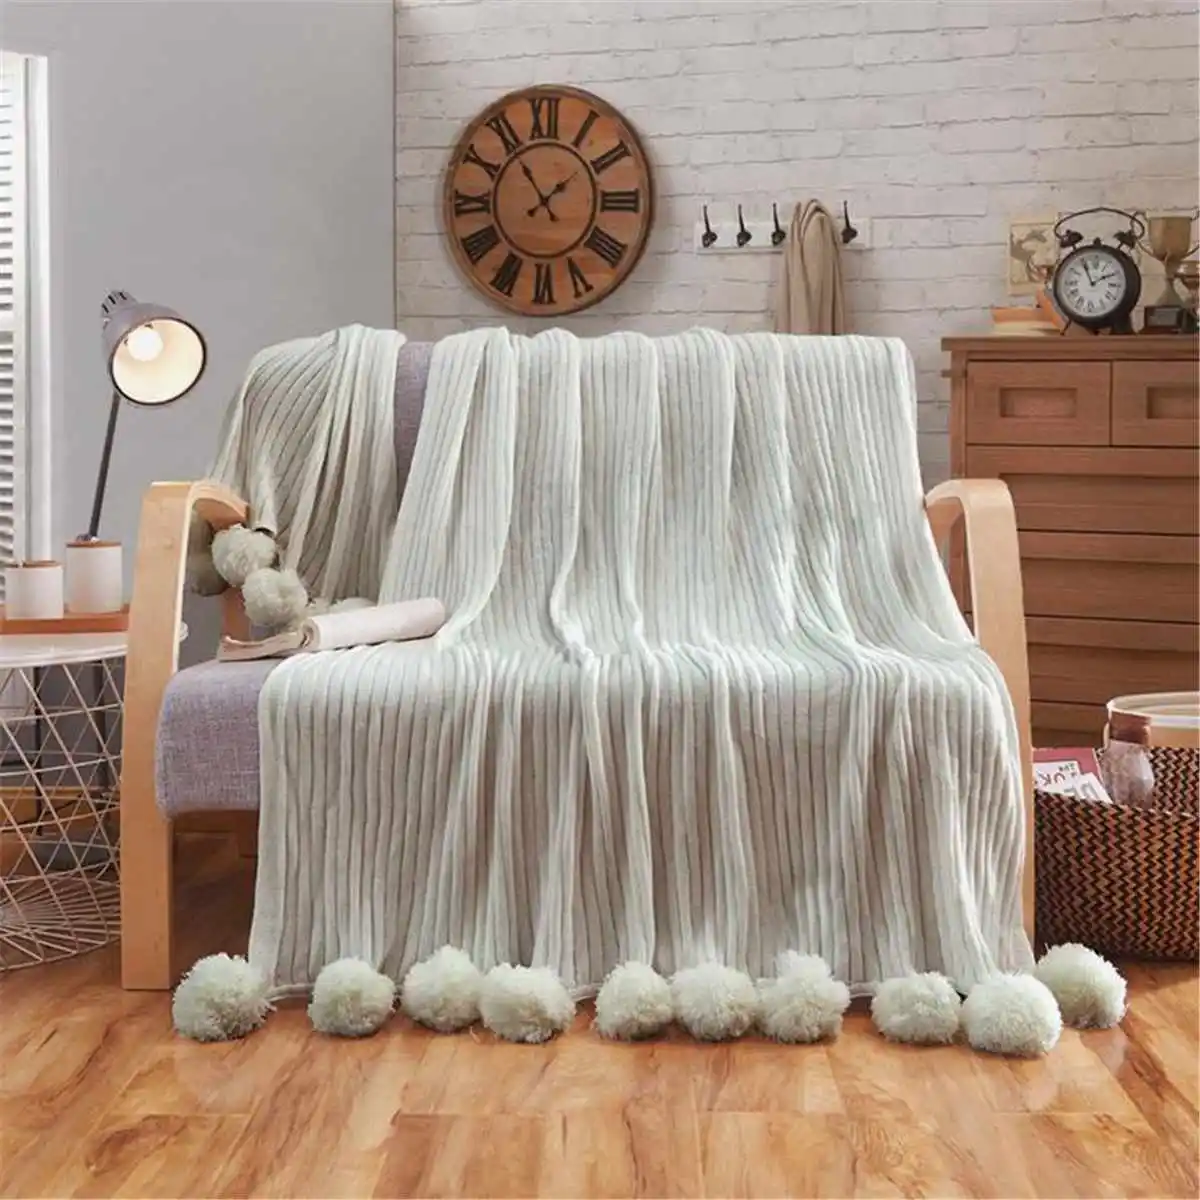 Вязаное Одеяло 100X150 см с помпонами, хлопковое вязаное одеяло в полоску, покрывало для кровати, дивана, автомобиля, украшение для дома, спальни, 3 цвета